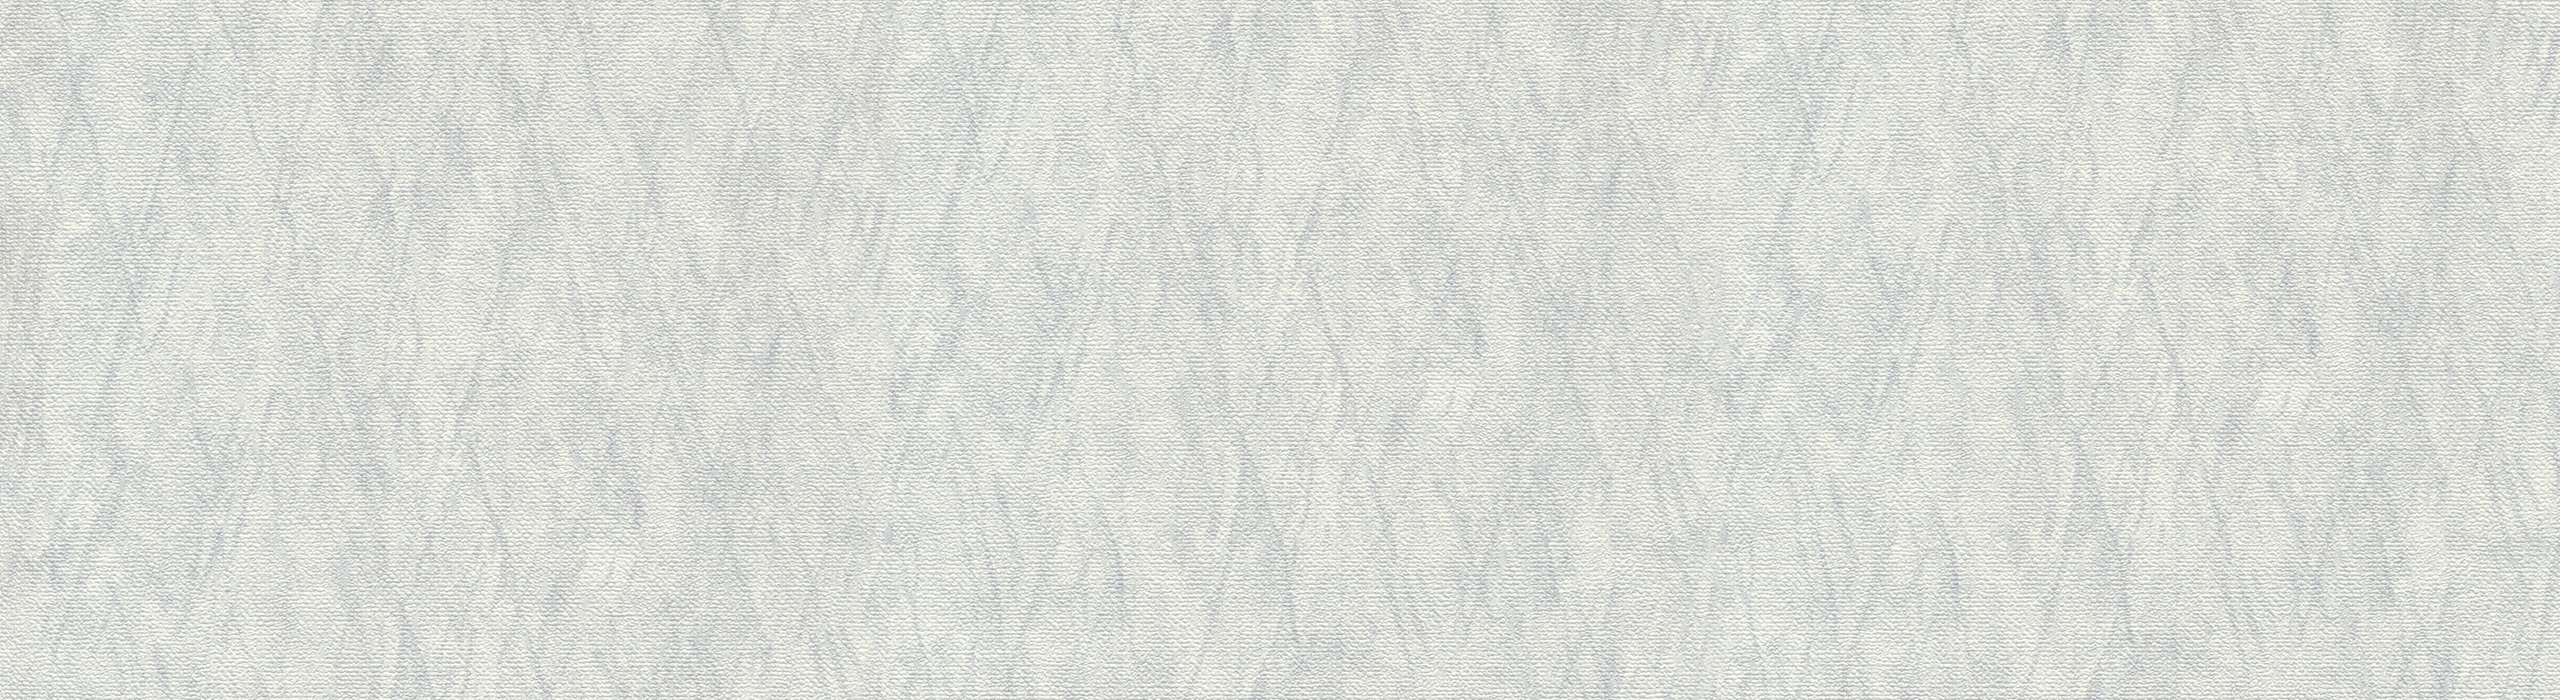 картинка 88284-1 Veluce 2018 Обои виниловые на бумажной основе 1.06*15.6 рисунок ткань цвет серый